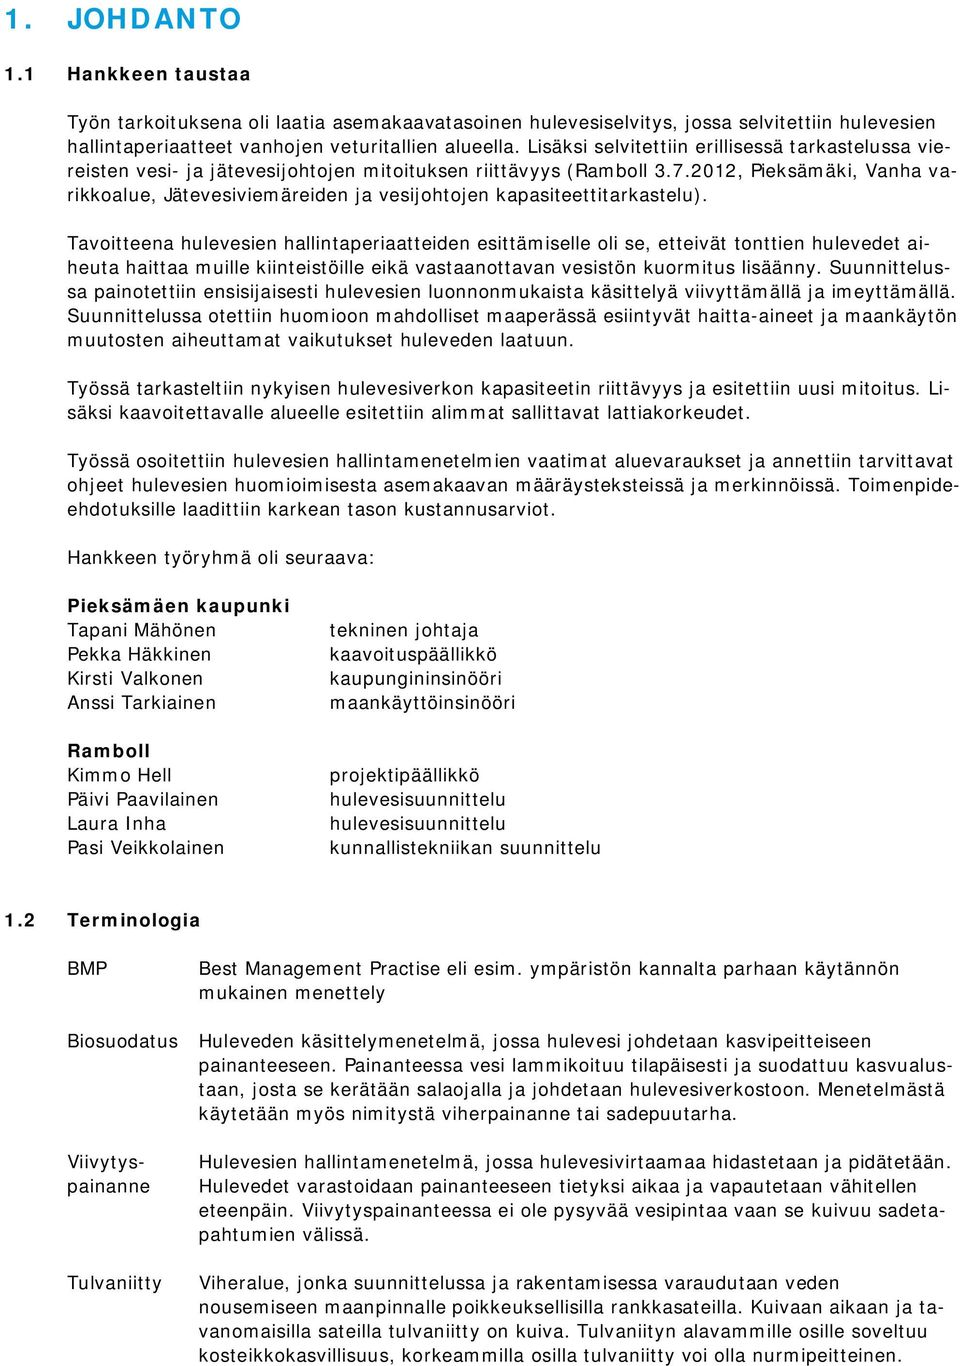 2012, Pieksämäki, Vanha varikkoalue, Jätevesiviemäreiden ja vesijohtojen kapasiteettitarkastelu).